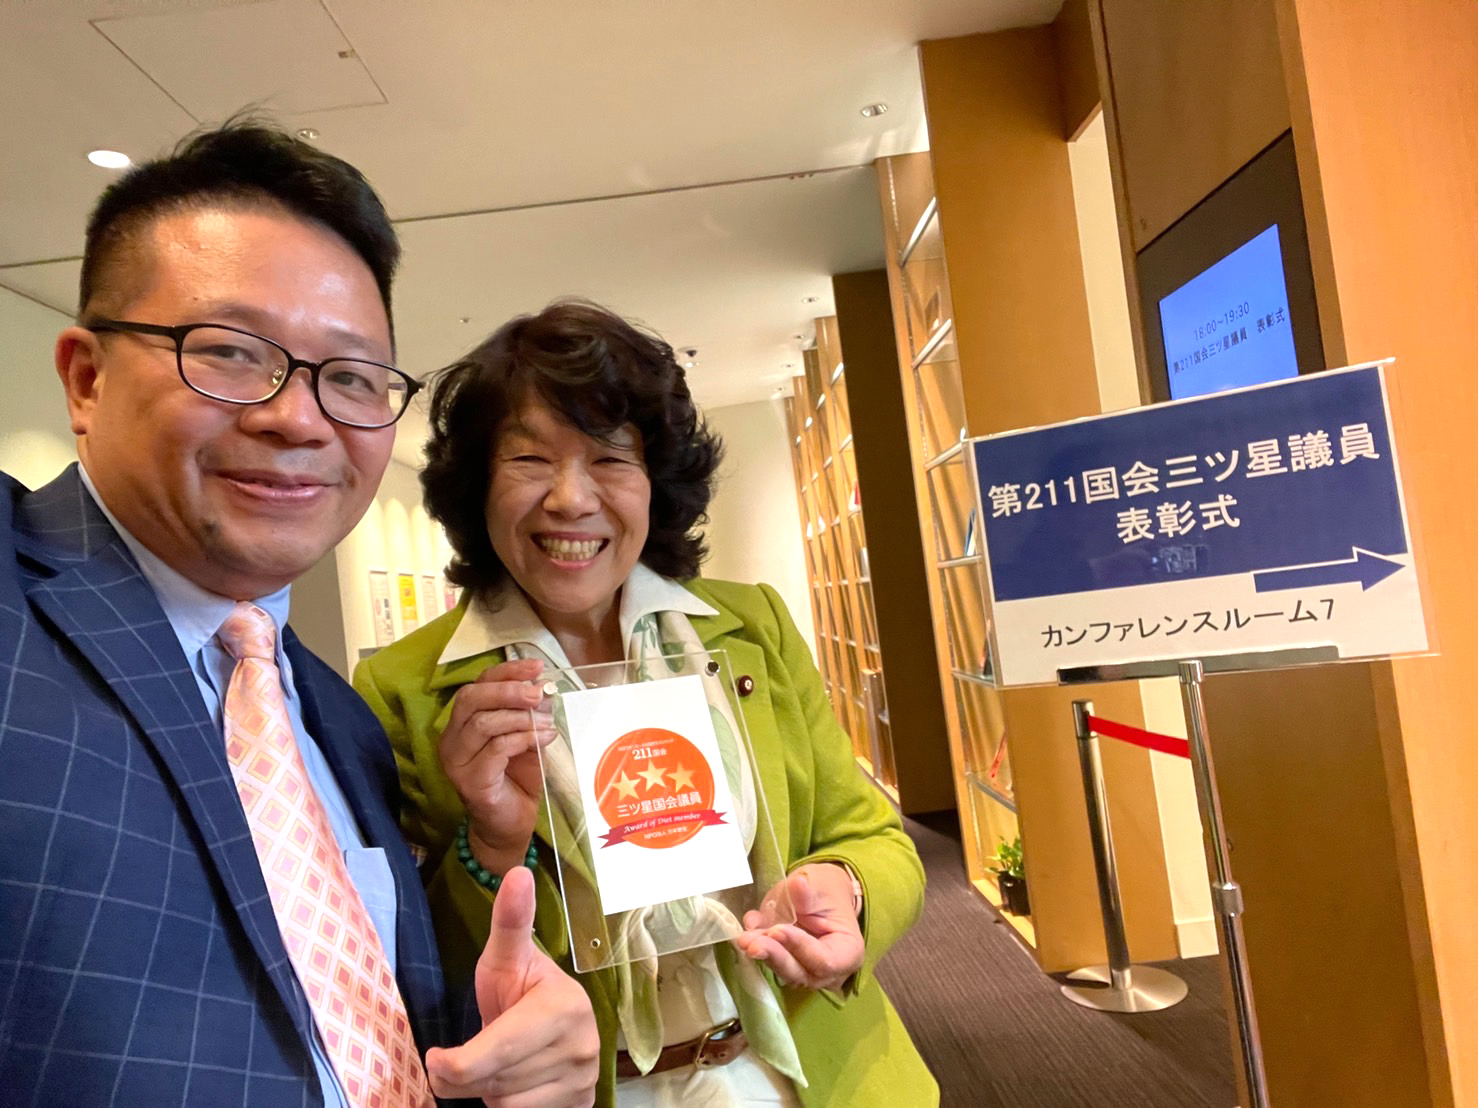 感 謝 日 本 國 會 眾 議 院 議 員 阿 部 知 子 女 士 ( 右 ) 發 言 表 達 對 台 灣 的 關 心 ， 本 人 也 分 享 了 個 人 觀 點 ， 交 流 相 當 愉 快 ！ 